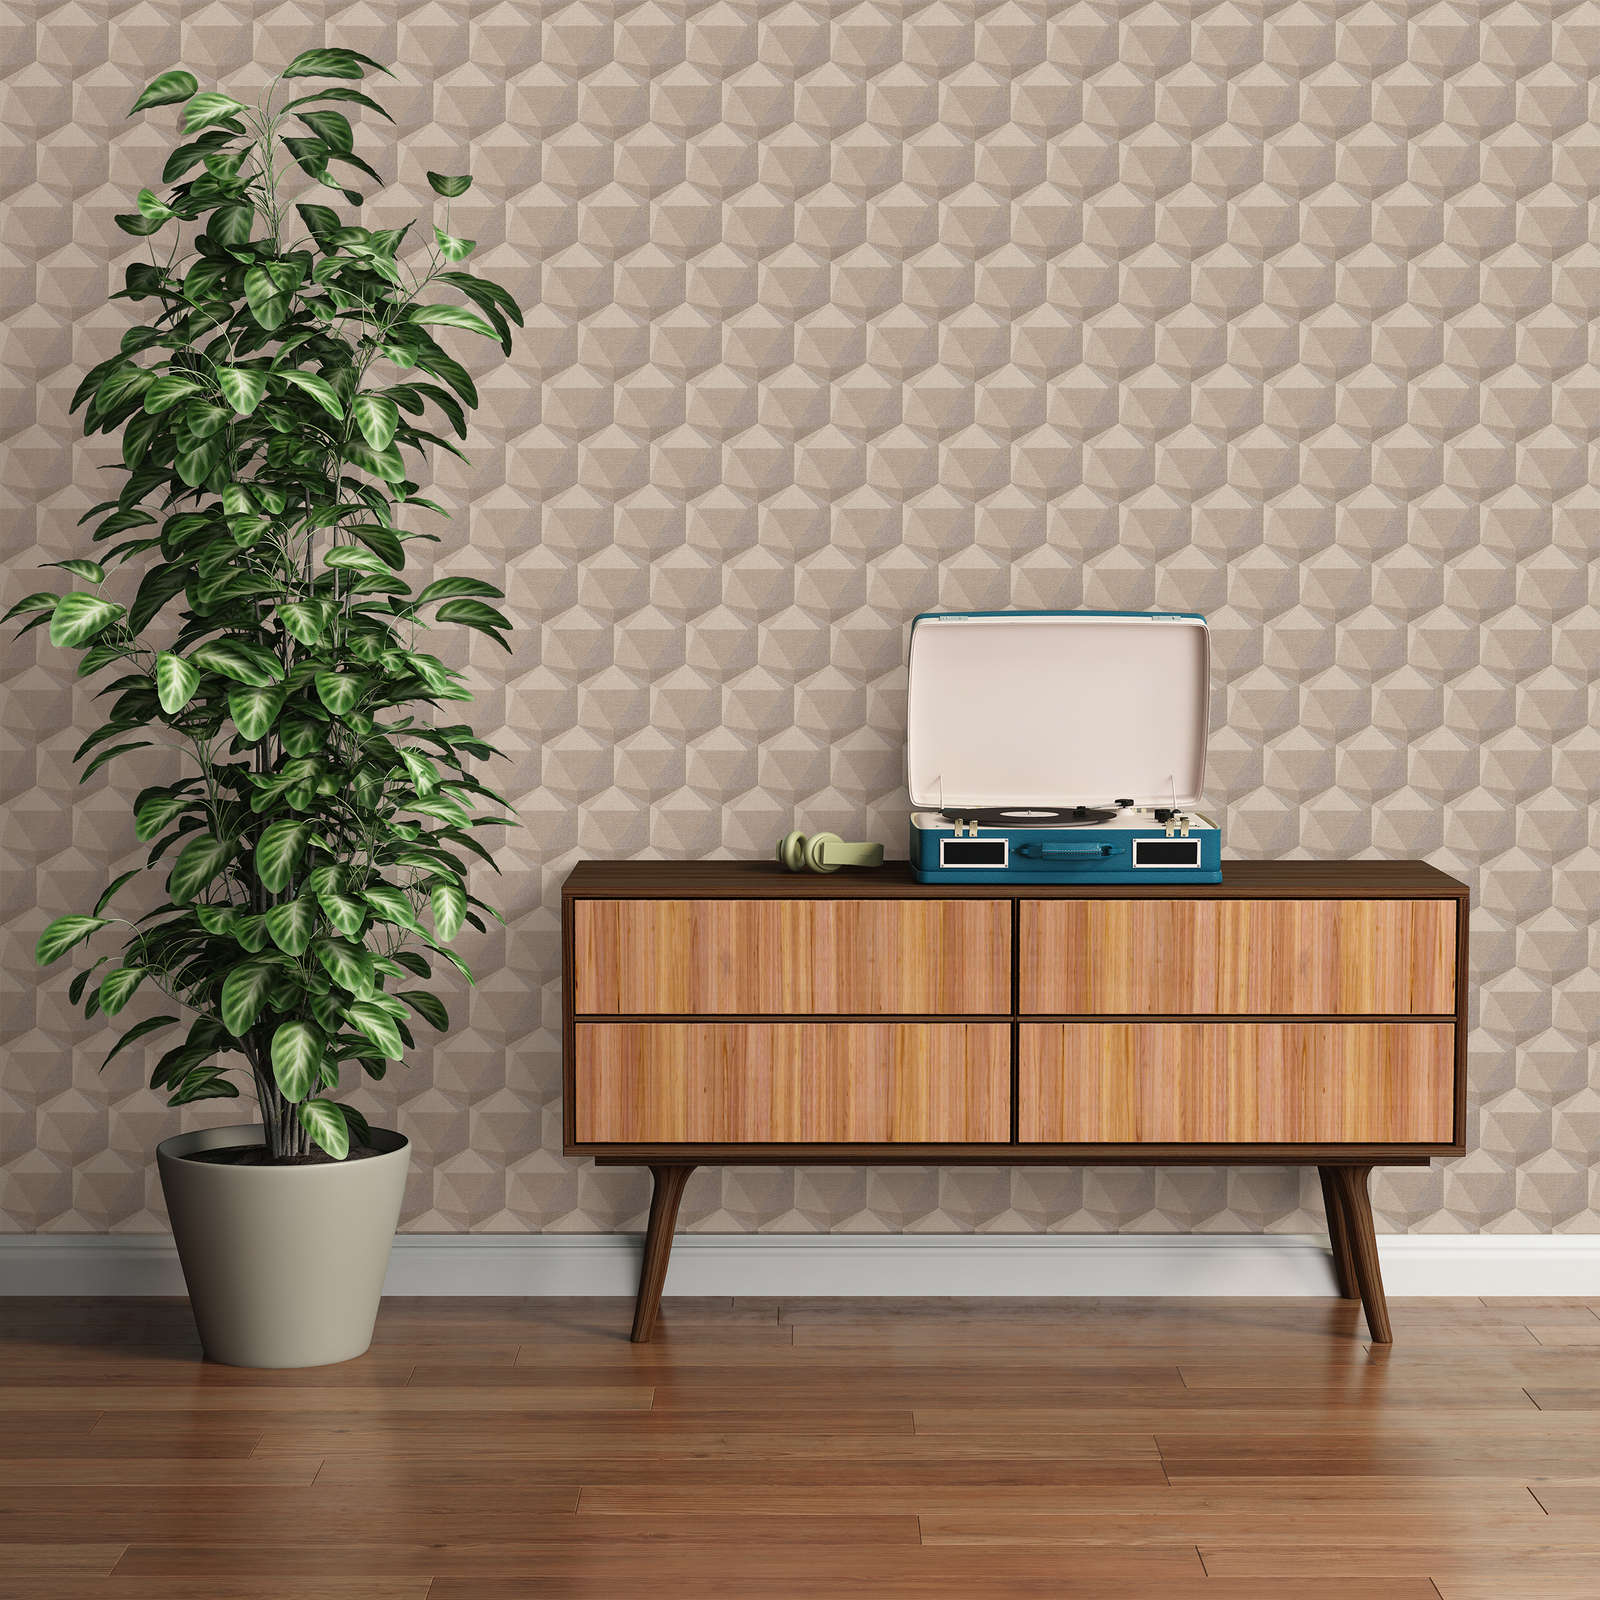             Pattern wallpaper with 3D design & linen look - beige, grey
        